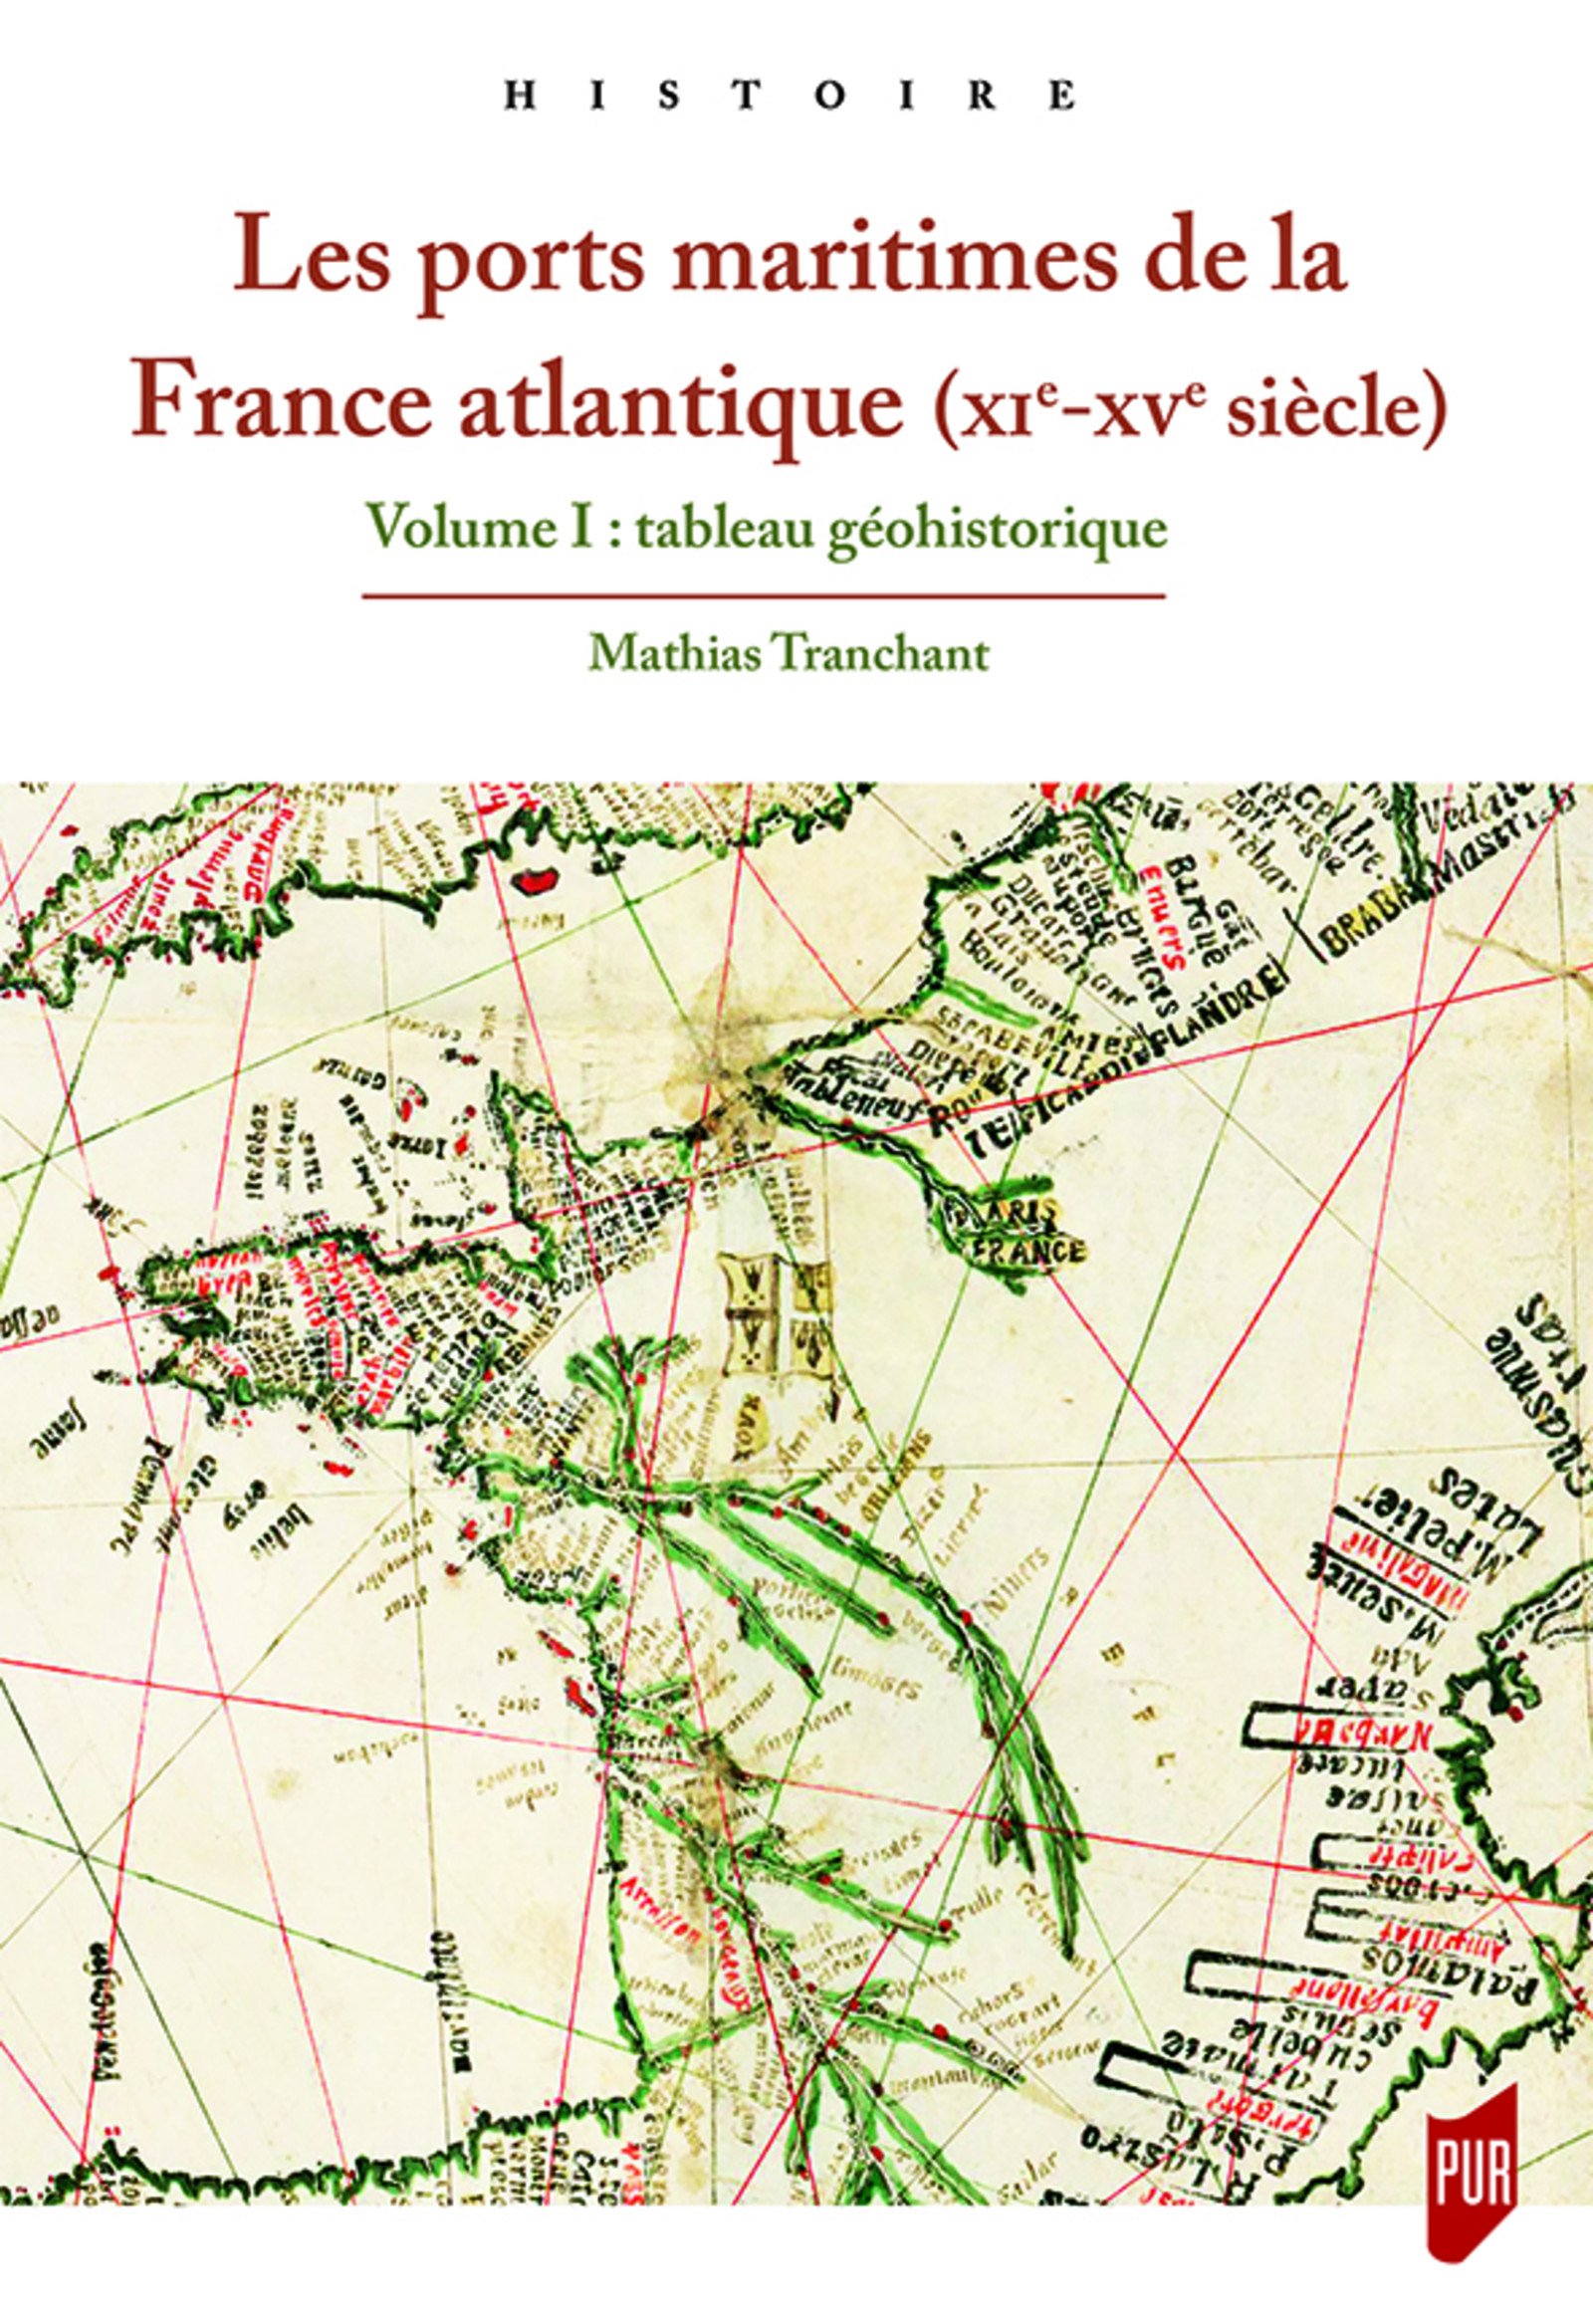 Les ports maritimes de la France atlantique (XIe-XVe siècle). Volume 1 : tableau géohistorique, 2018, 261 p.